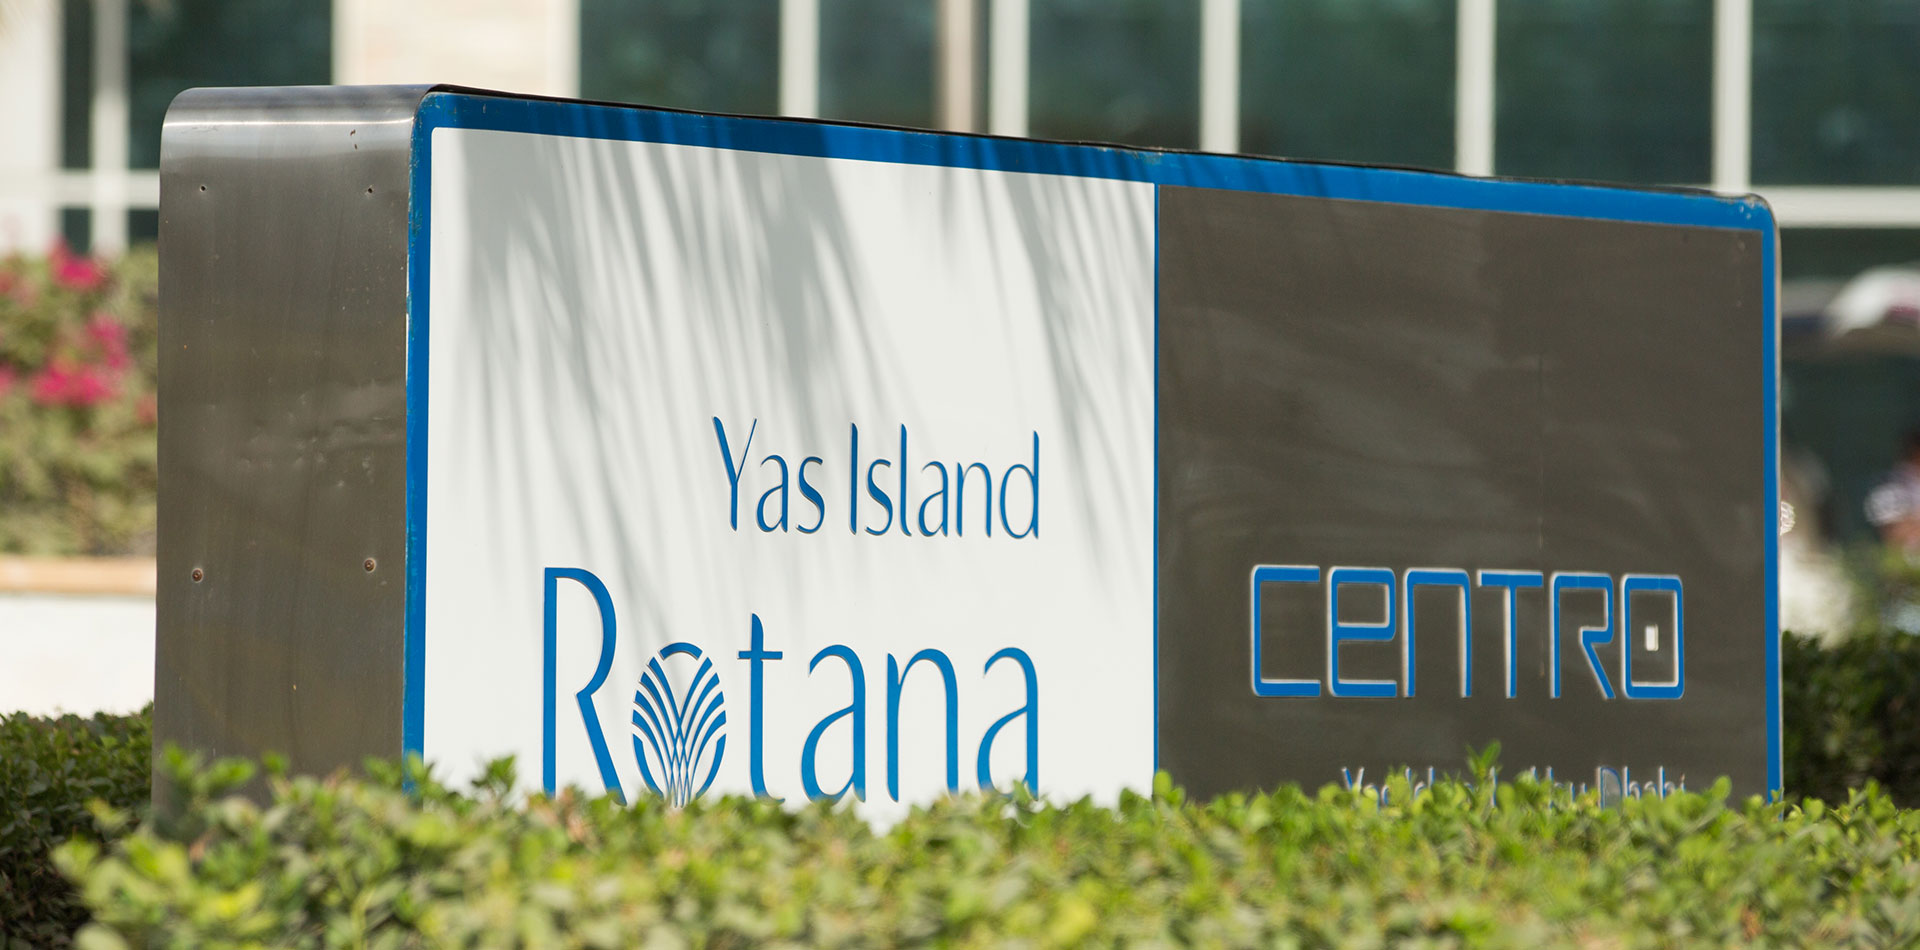 Monument Signage of Yas Island Rotana